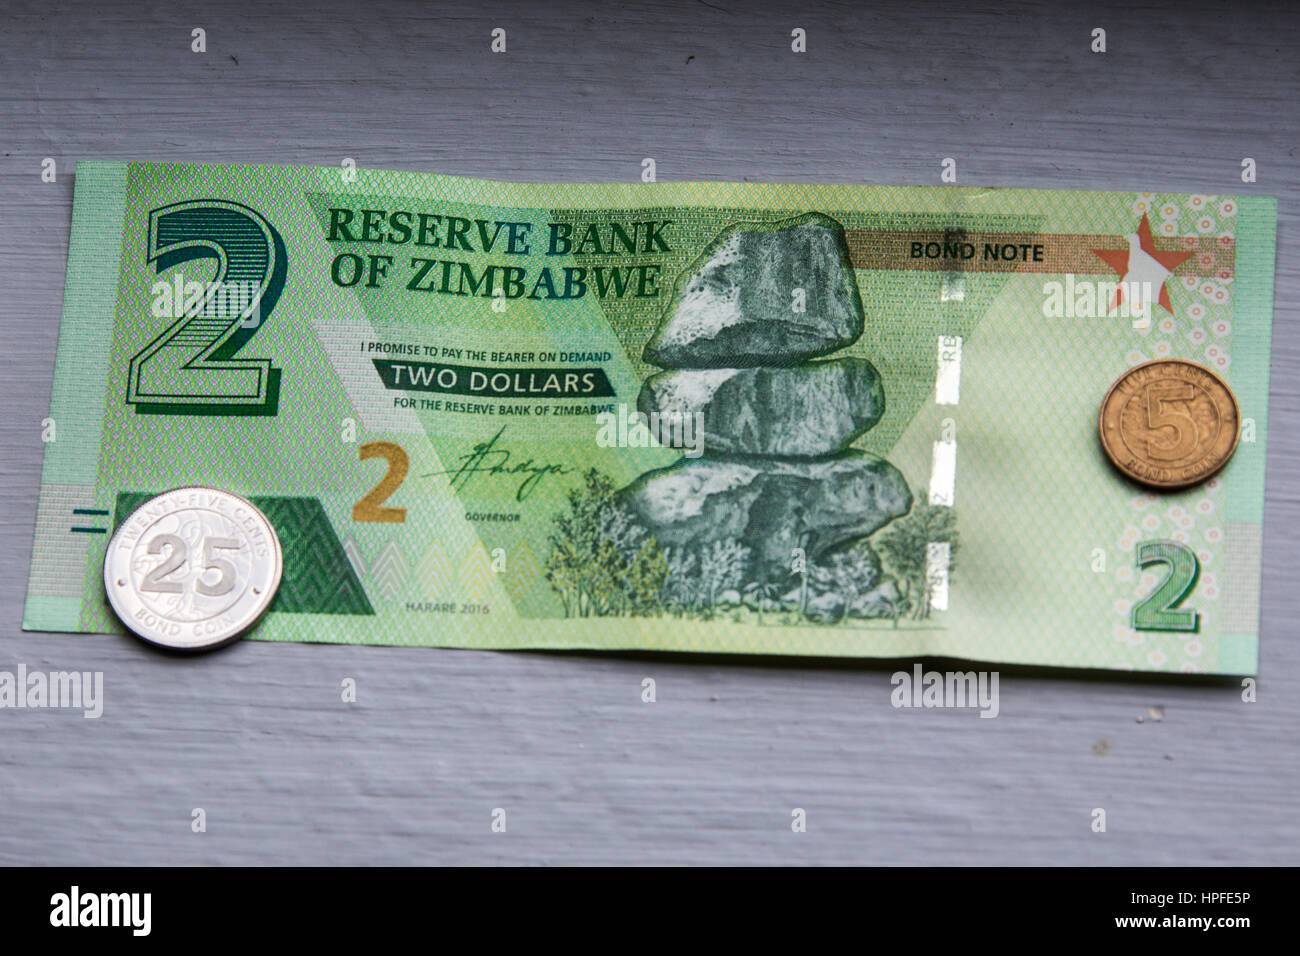 Two dollar bond note, Zimbabwe Stock Photo